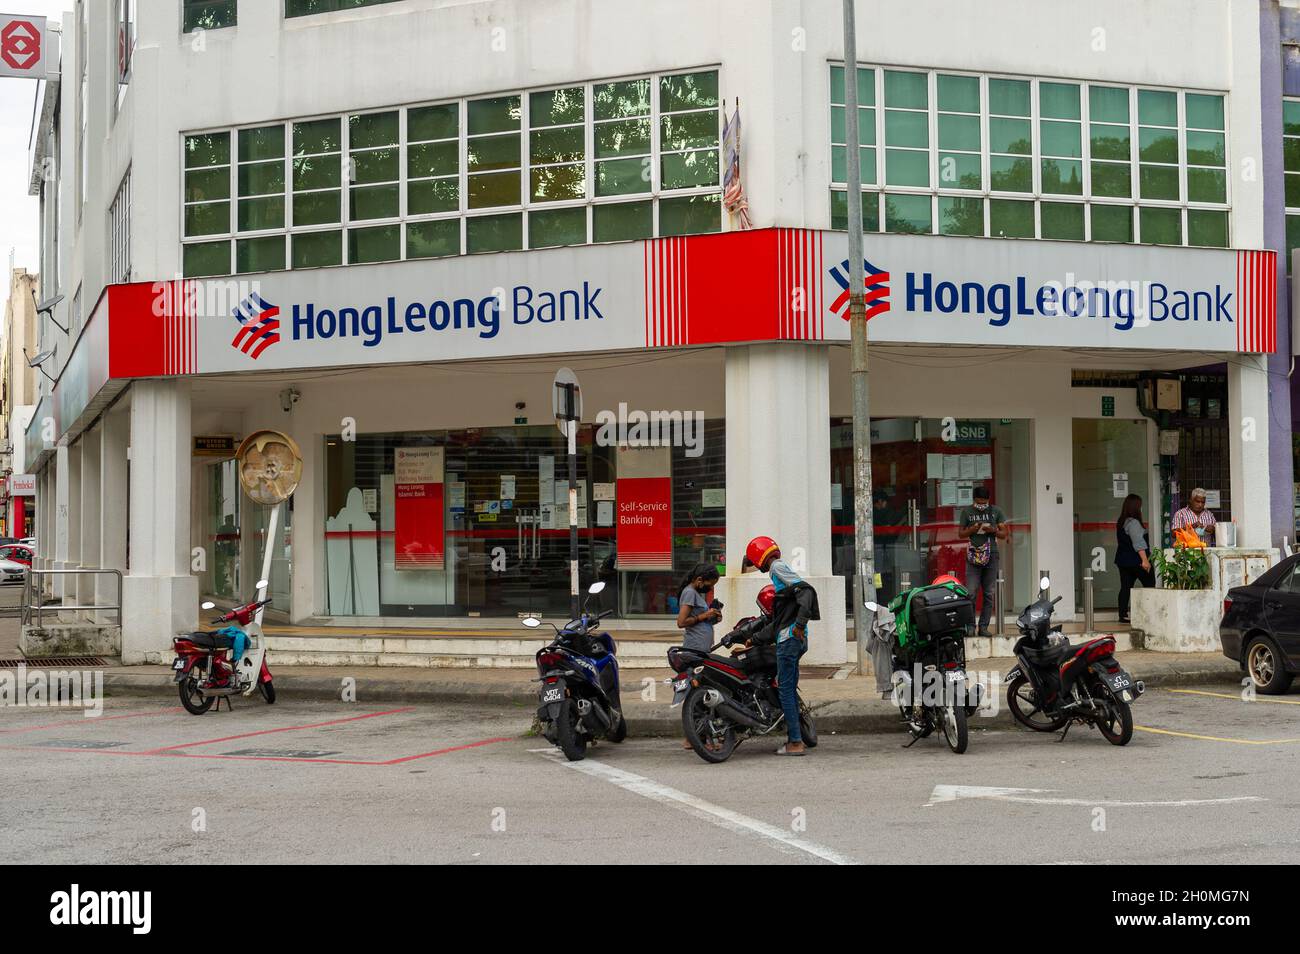 Leong contact hong bank HLB Connect